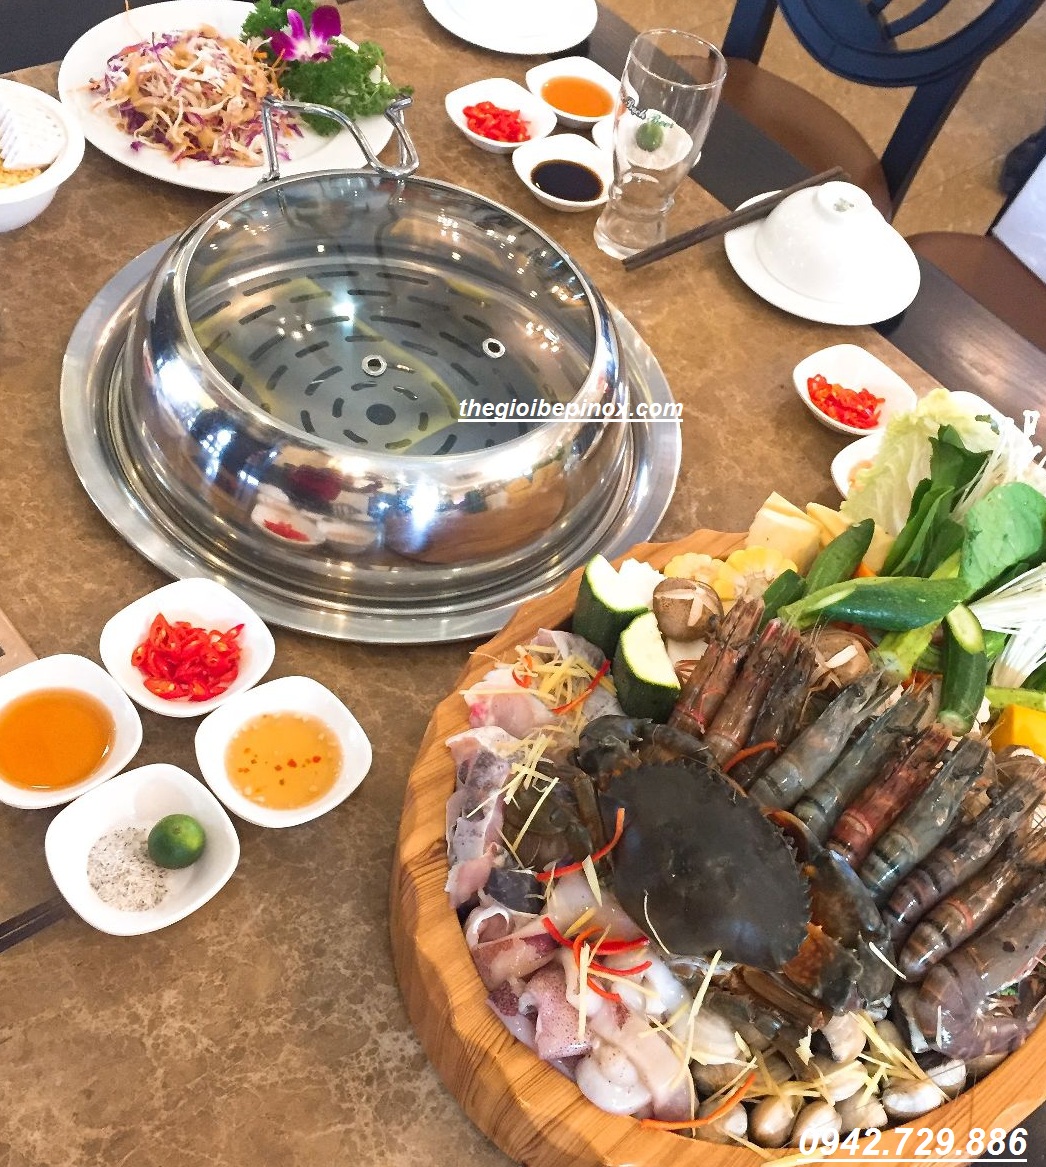 Thiết bị bếp lẩu hơi gia đình có thể đặt trên bàn hay âm bàn đều được I Nồi lẩu hơi gia đình giá rẻ tại Quảng Ninh